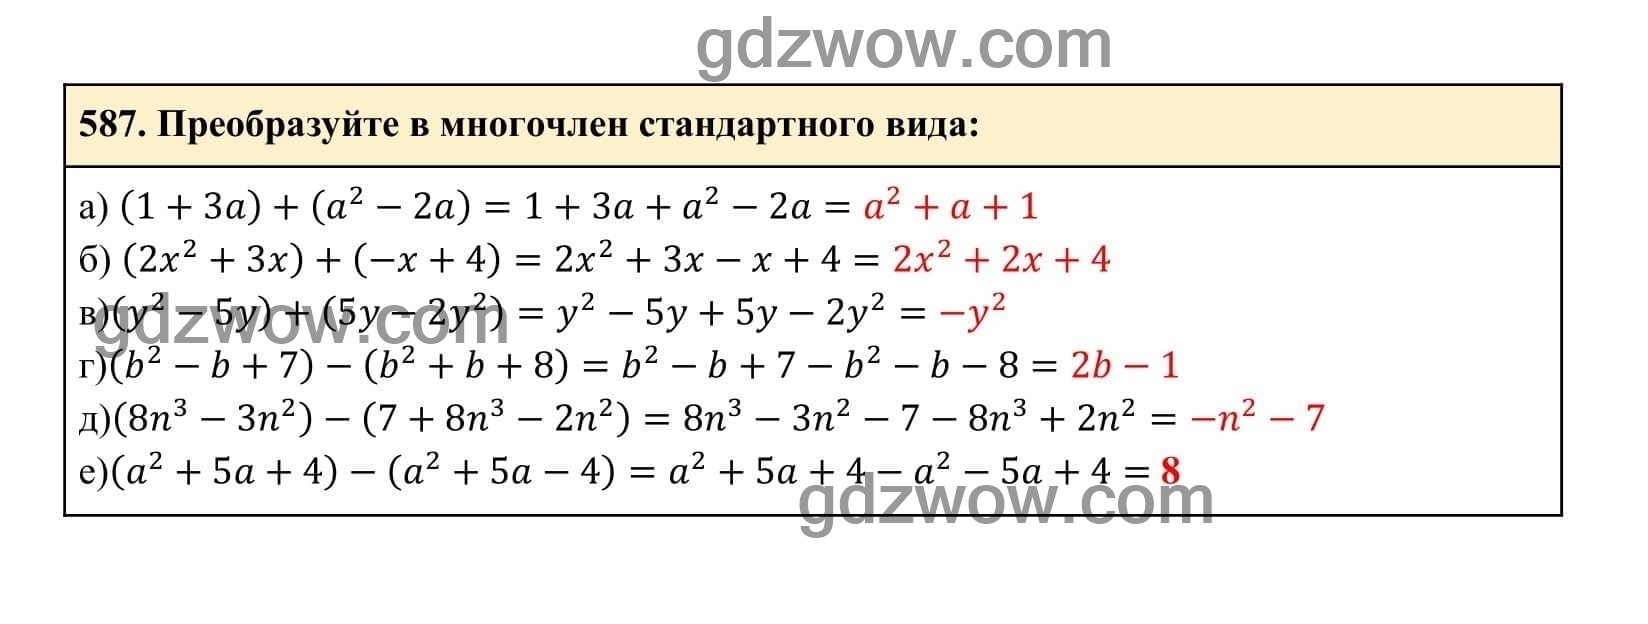 Упражнение 587 - ГДЗ по Алгебре 7 класс Учебник Макарычев (решебник) - GDZwow